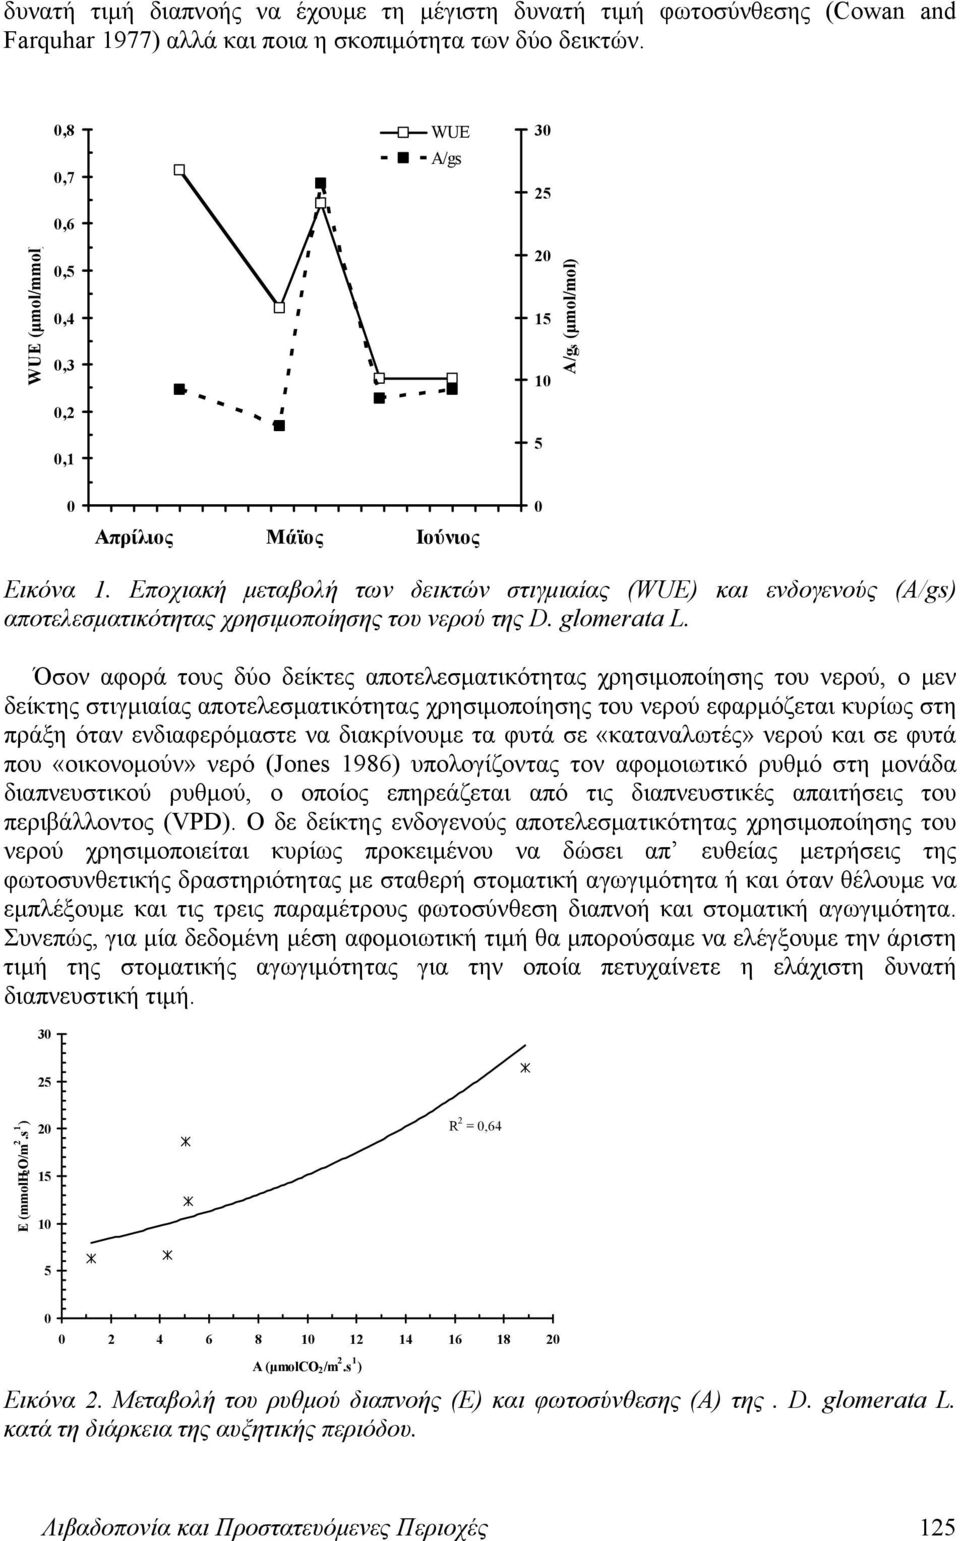 Εποχιακή μεταβολή των δεικτών στιγμιαίας (WUE) και ενδογενούς (A/gs) αποτελεσματικότητας χρησιμοποίησης του νερού της D. glomerata L.